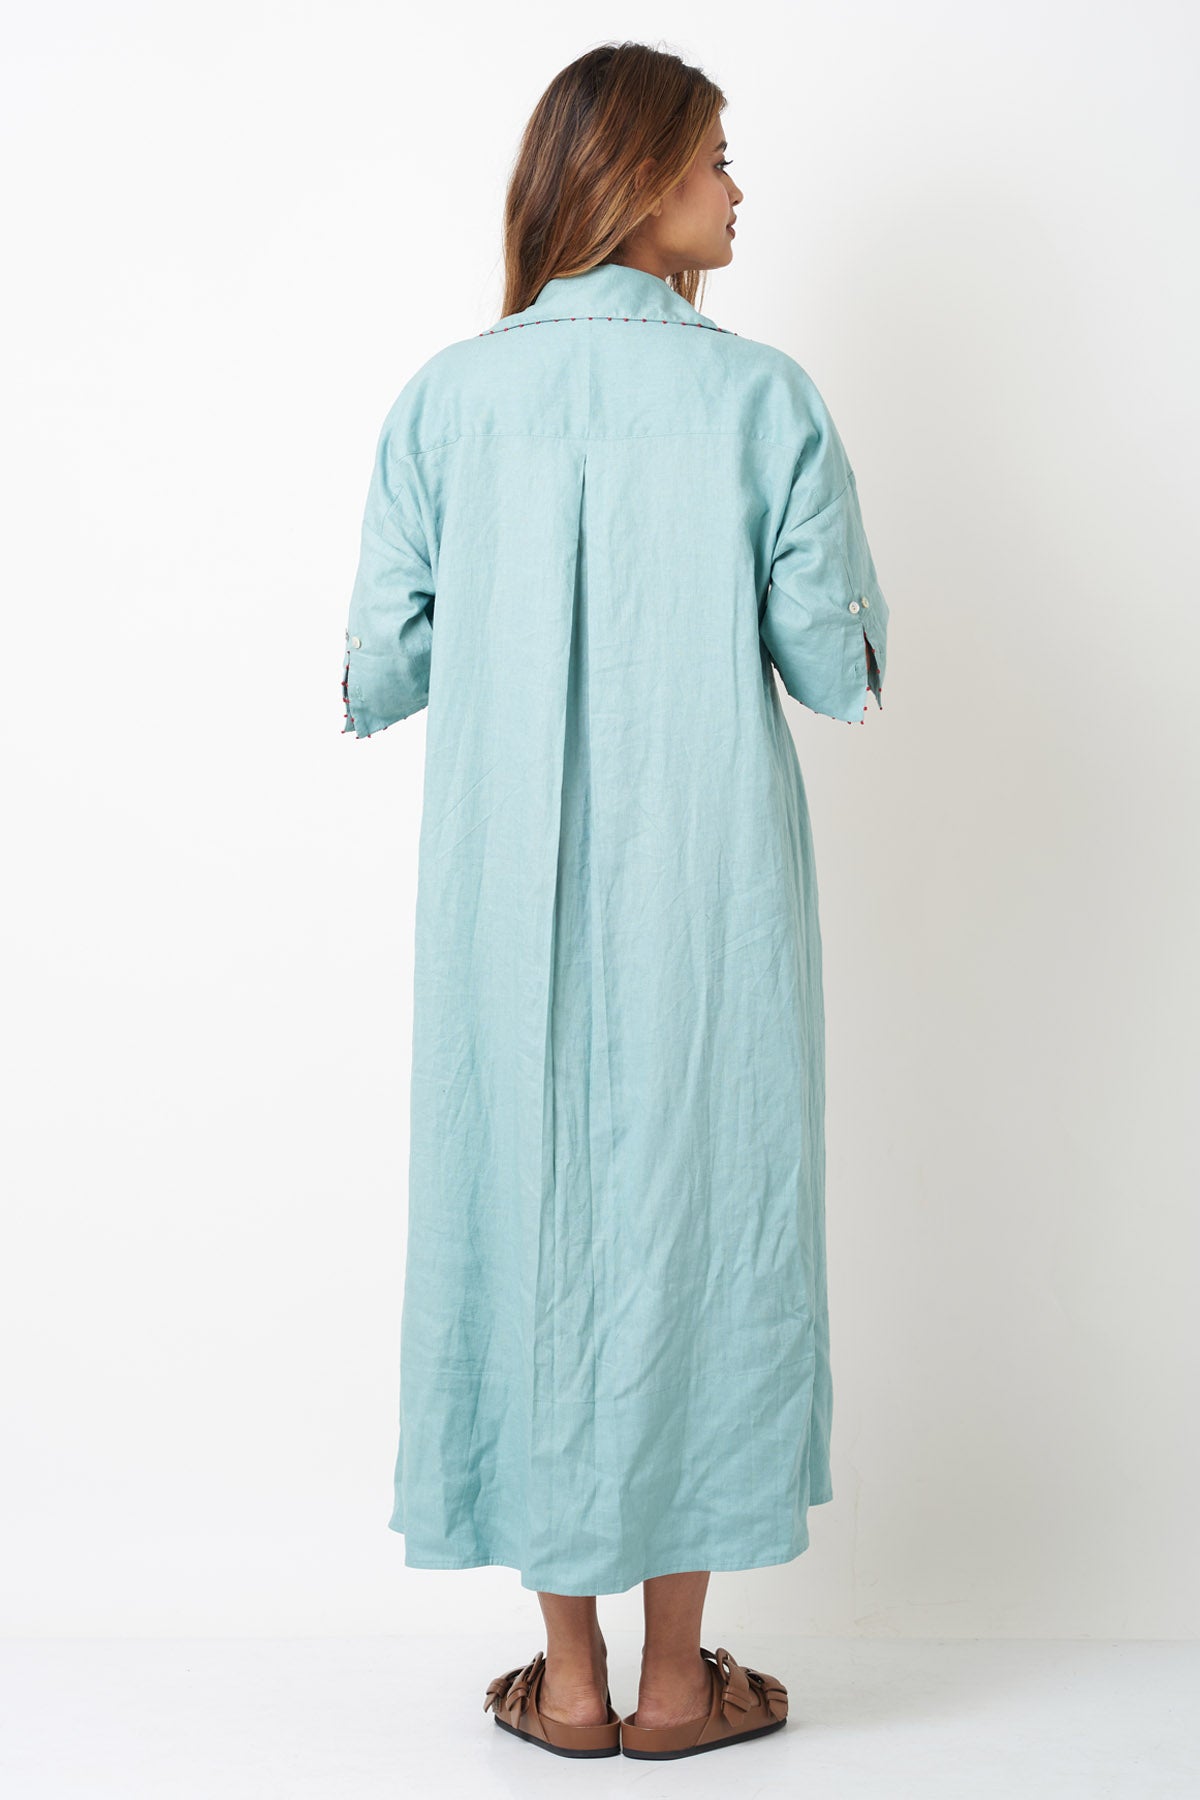 Aqua Viscose Linen Shirt Dress